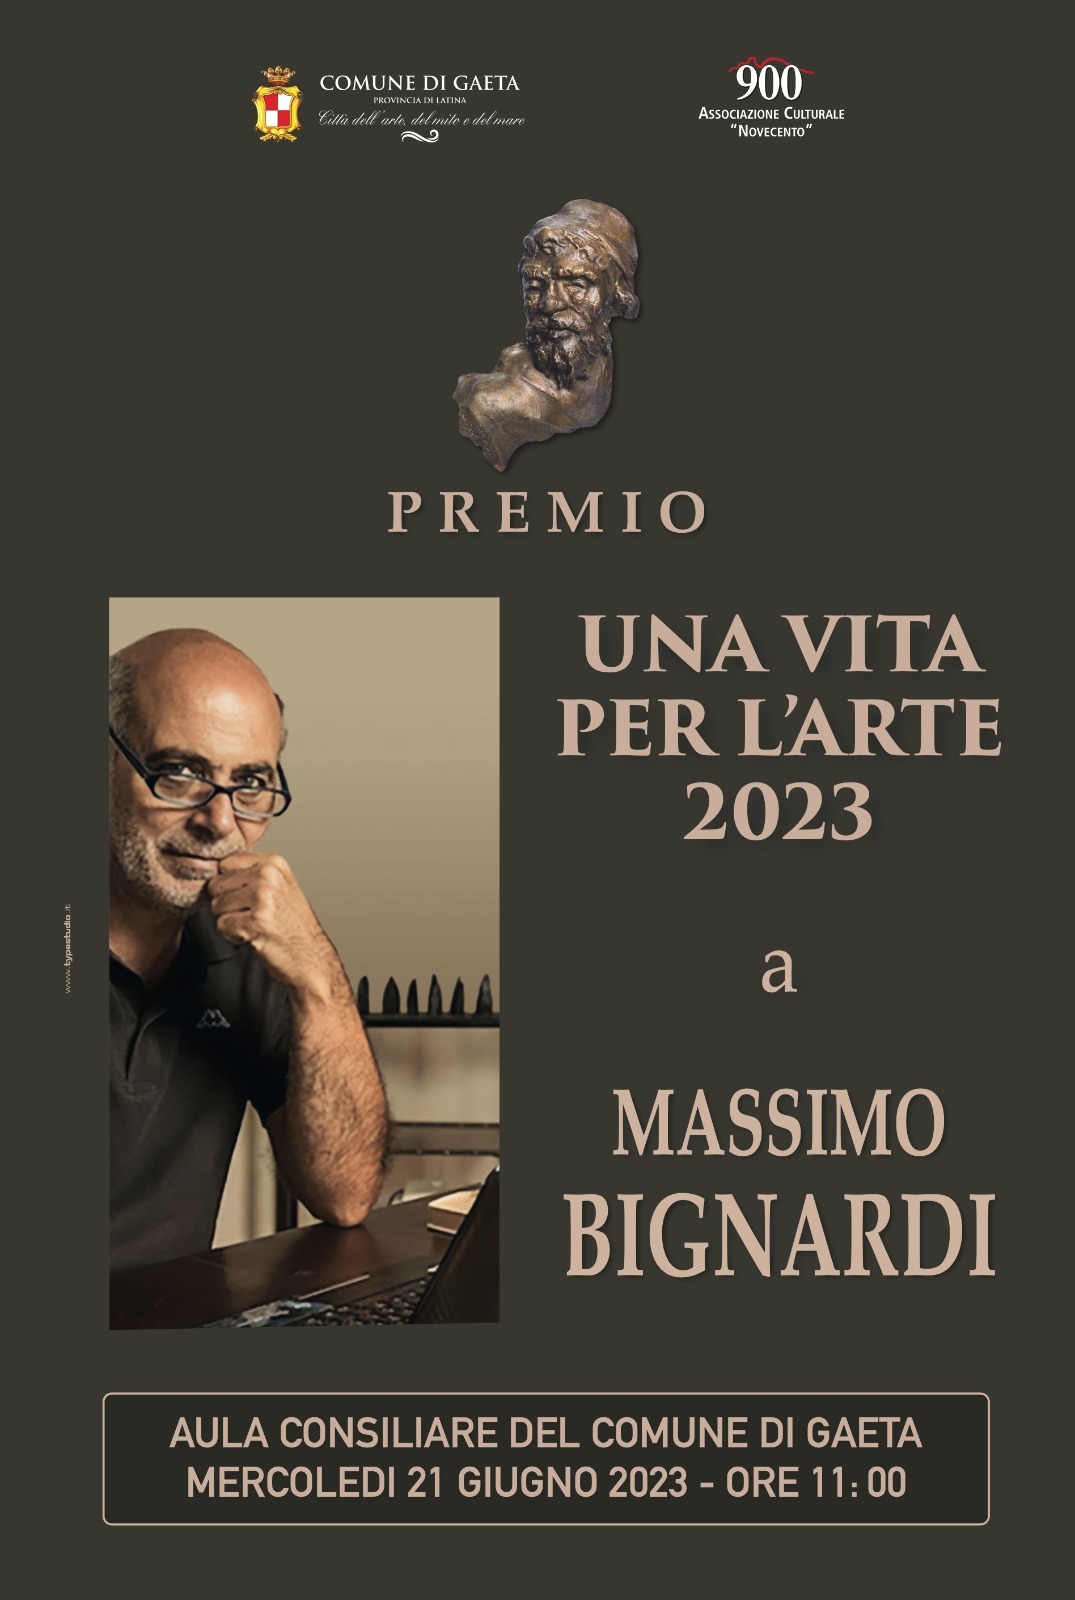 "Una vita per l'arte 2023", mercoledì 21 giugno in Aula Consiliare la cerimonia di conferimento del premio a Massimo Bignardi